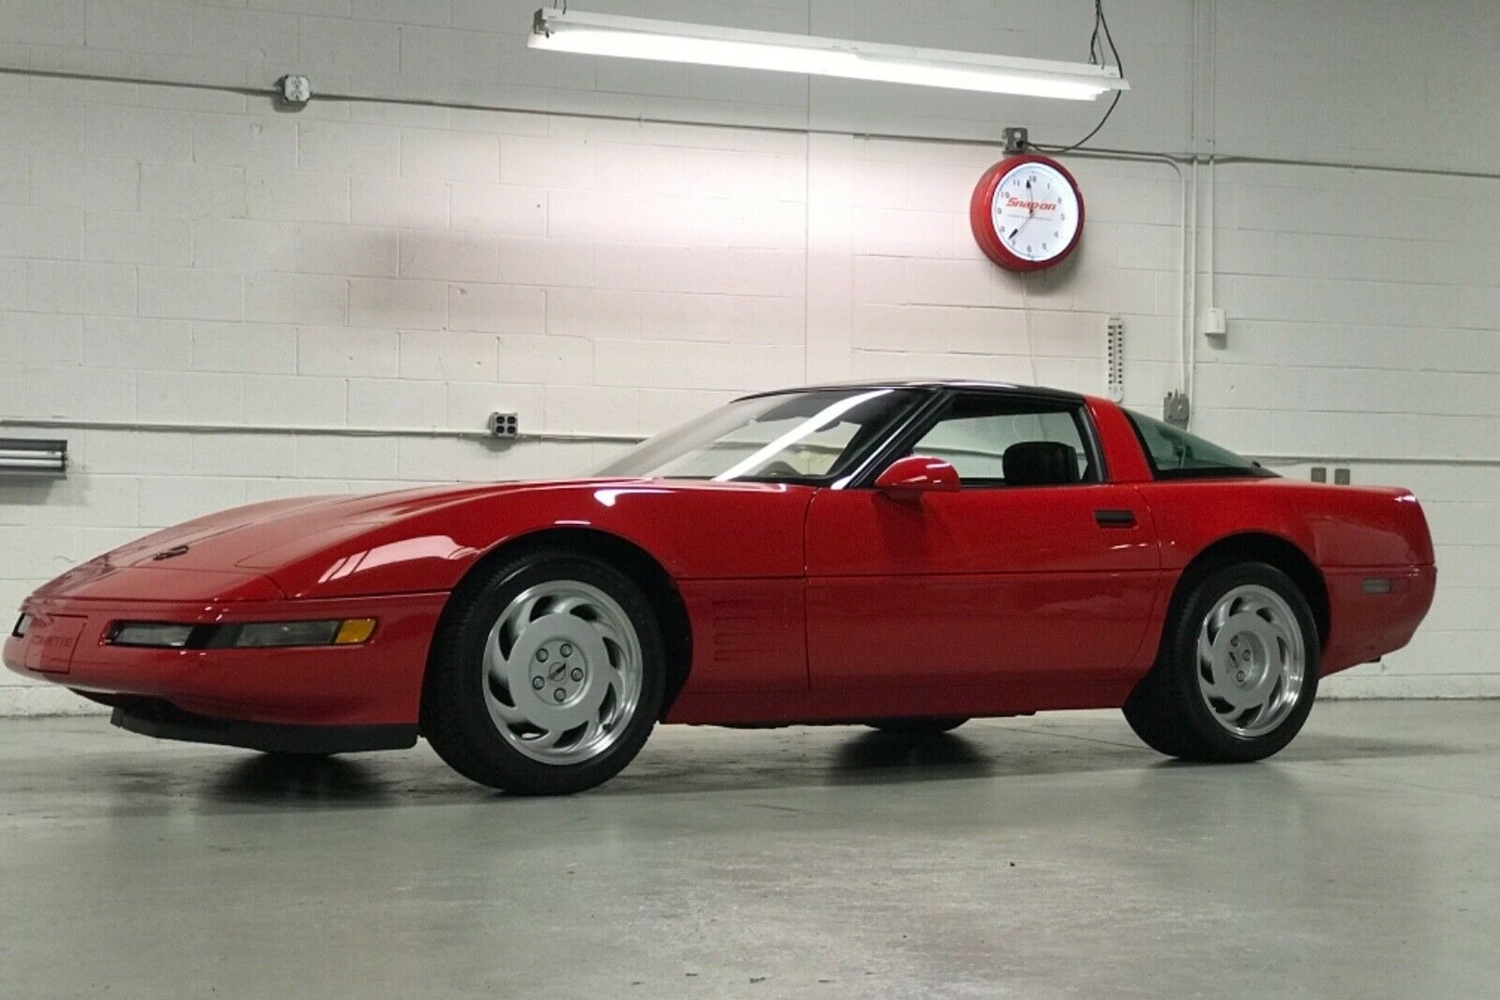 30 évig várt az első tulajdonosra ez a piros Corvette 5